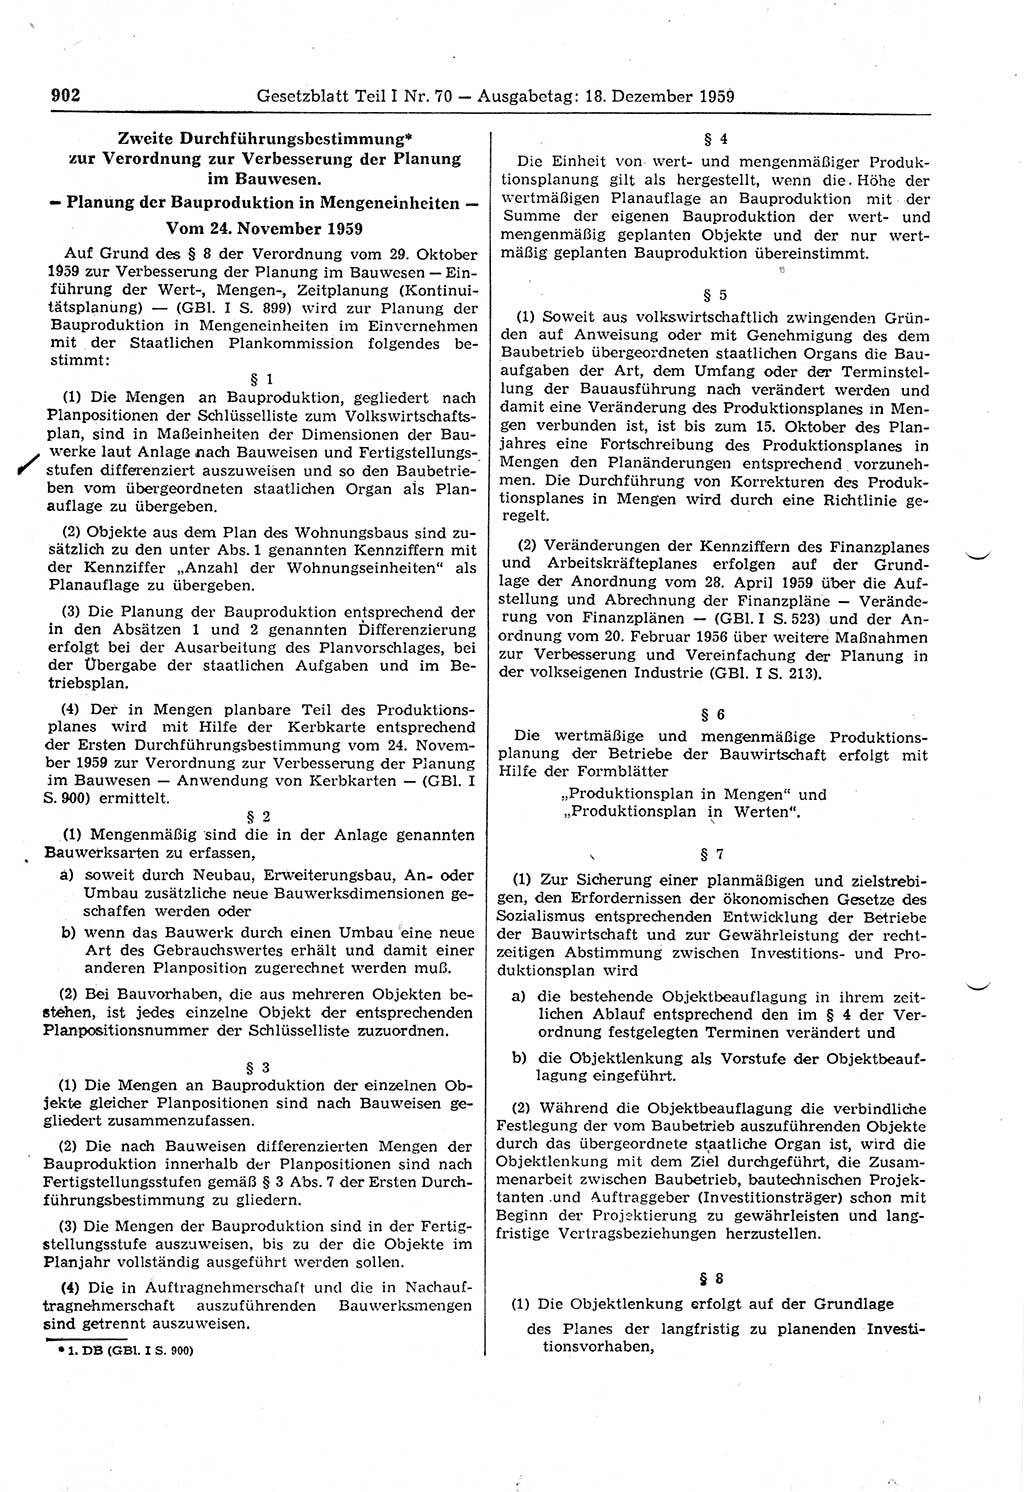 Gesetzblatt (GBl.) der Deutschen Demokratischen Republik (DDR) Teil Ⅰ 1959, Seite 902 (GBl. DDR Ⅰ 1959, S. 902)